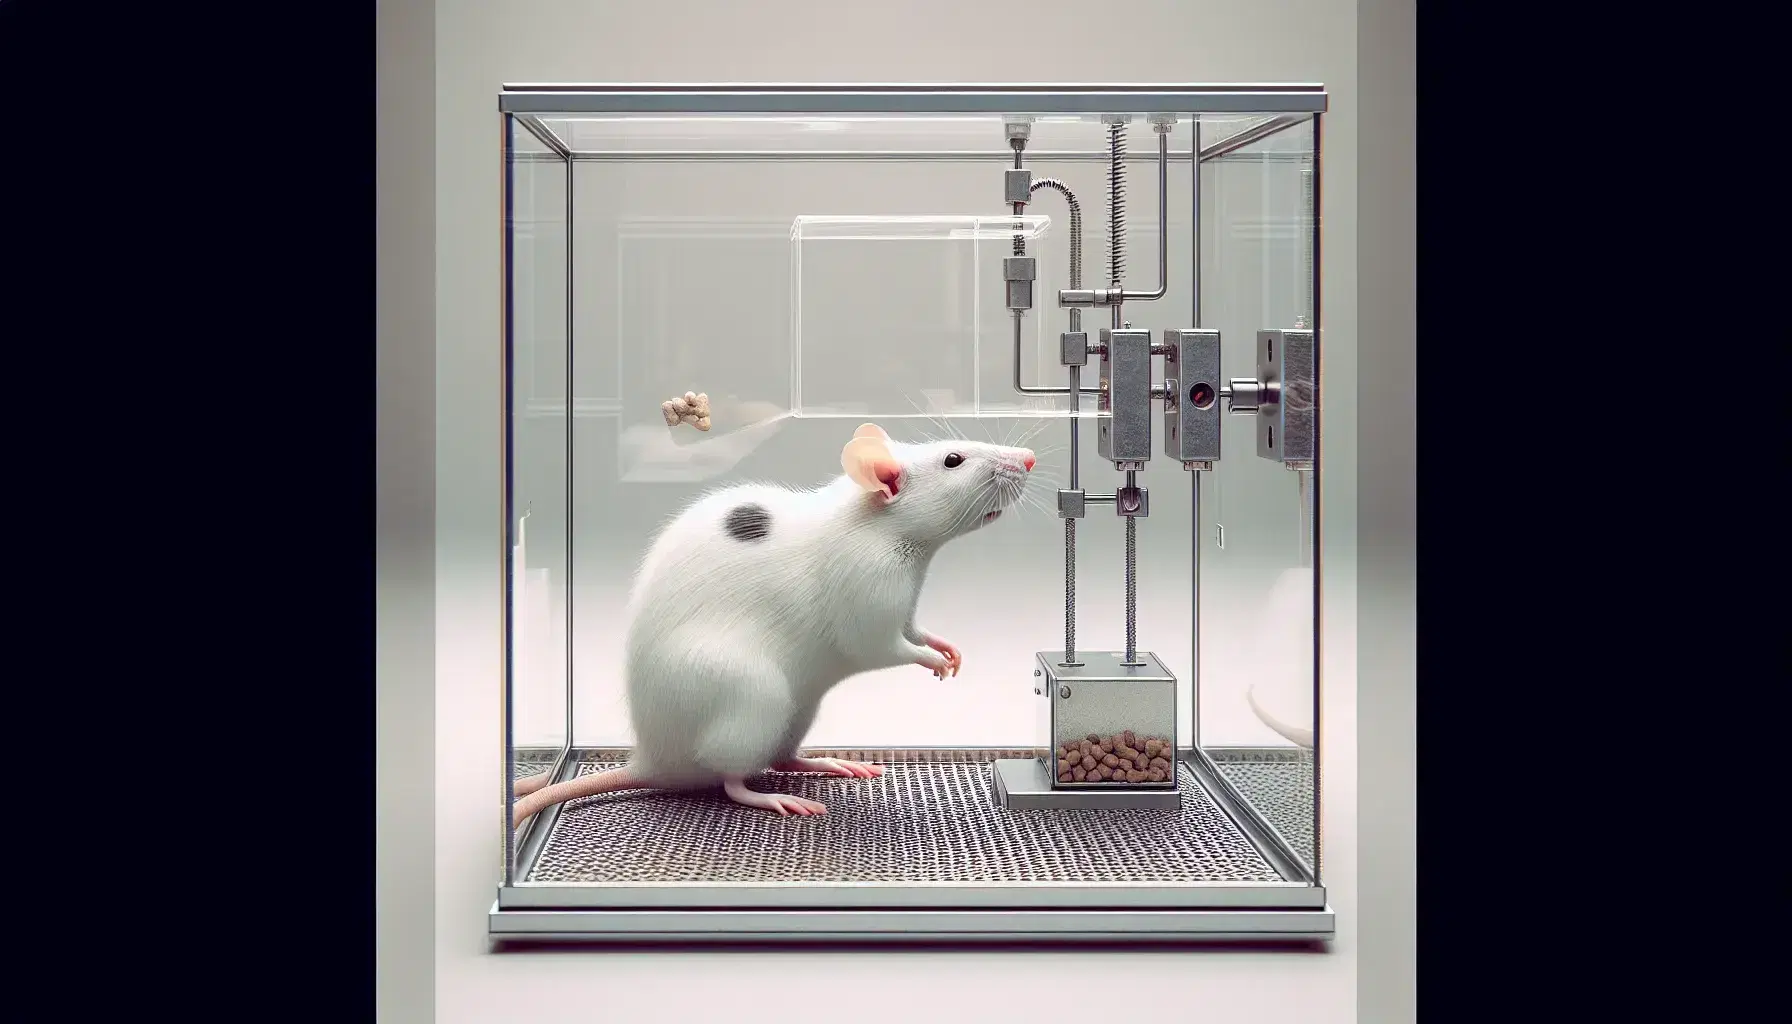 Rata de laboratorio blanca con manchas negras interactuando con una palanca en una caja de Skinner transparente con dispensador de comida y suelo de rejilla metálica.